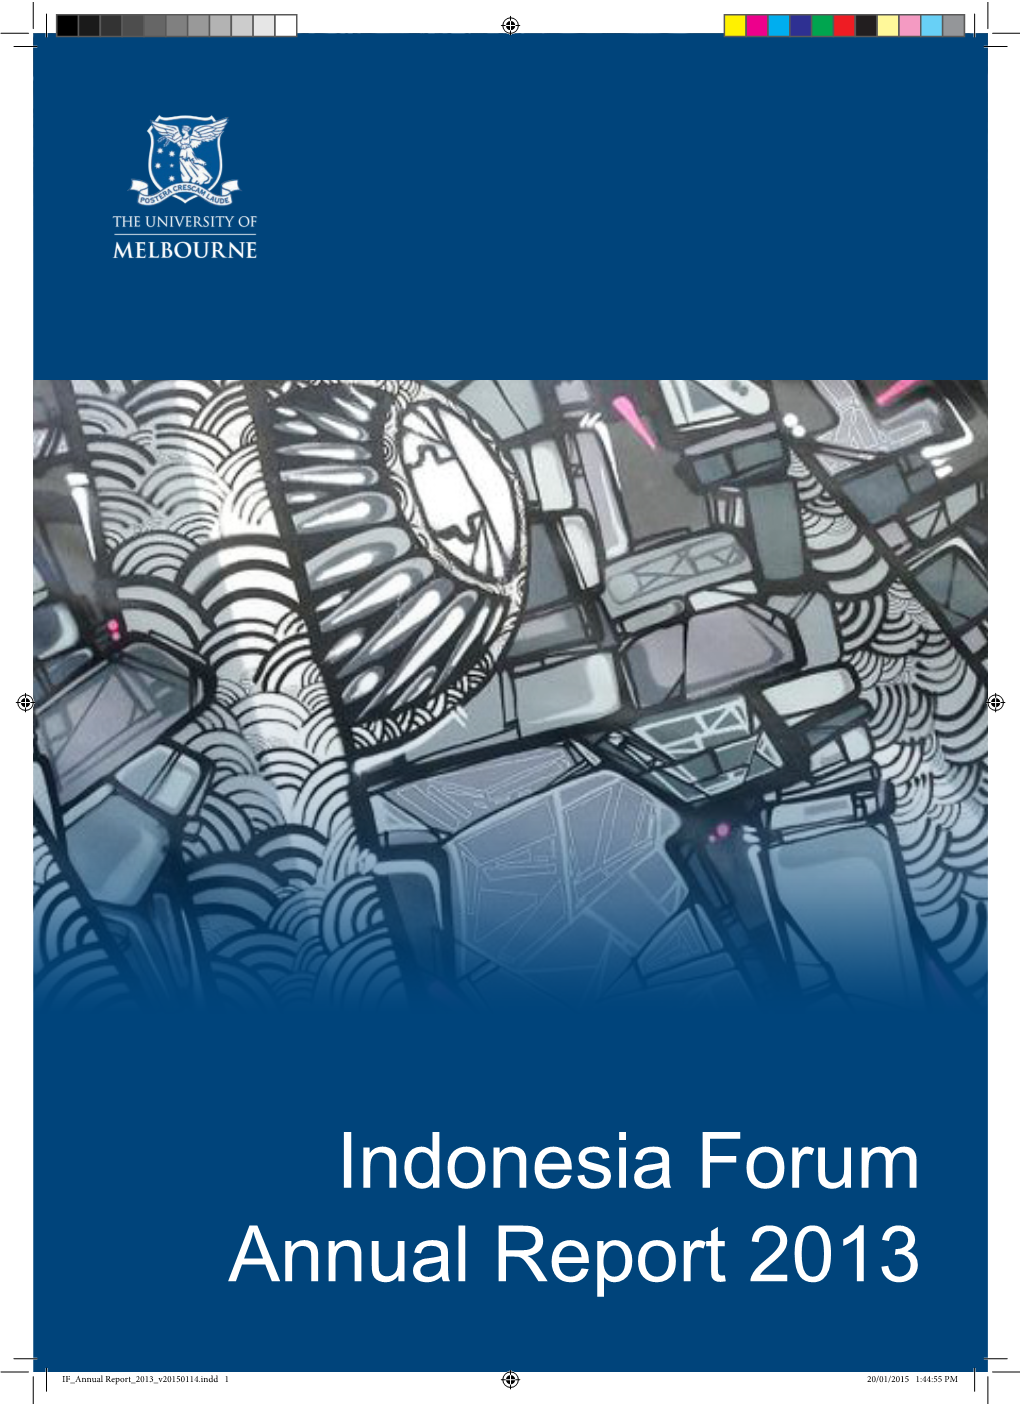 Indonesia Forum Annual Report 2013